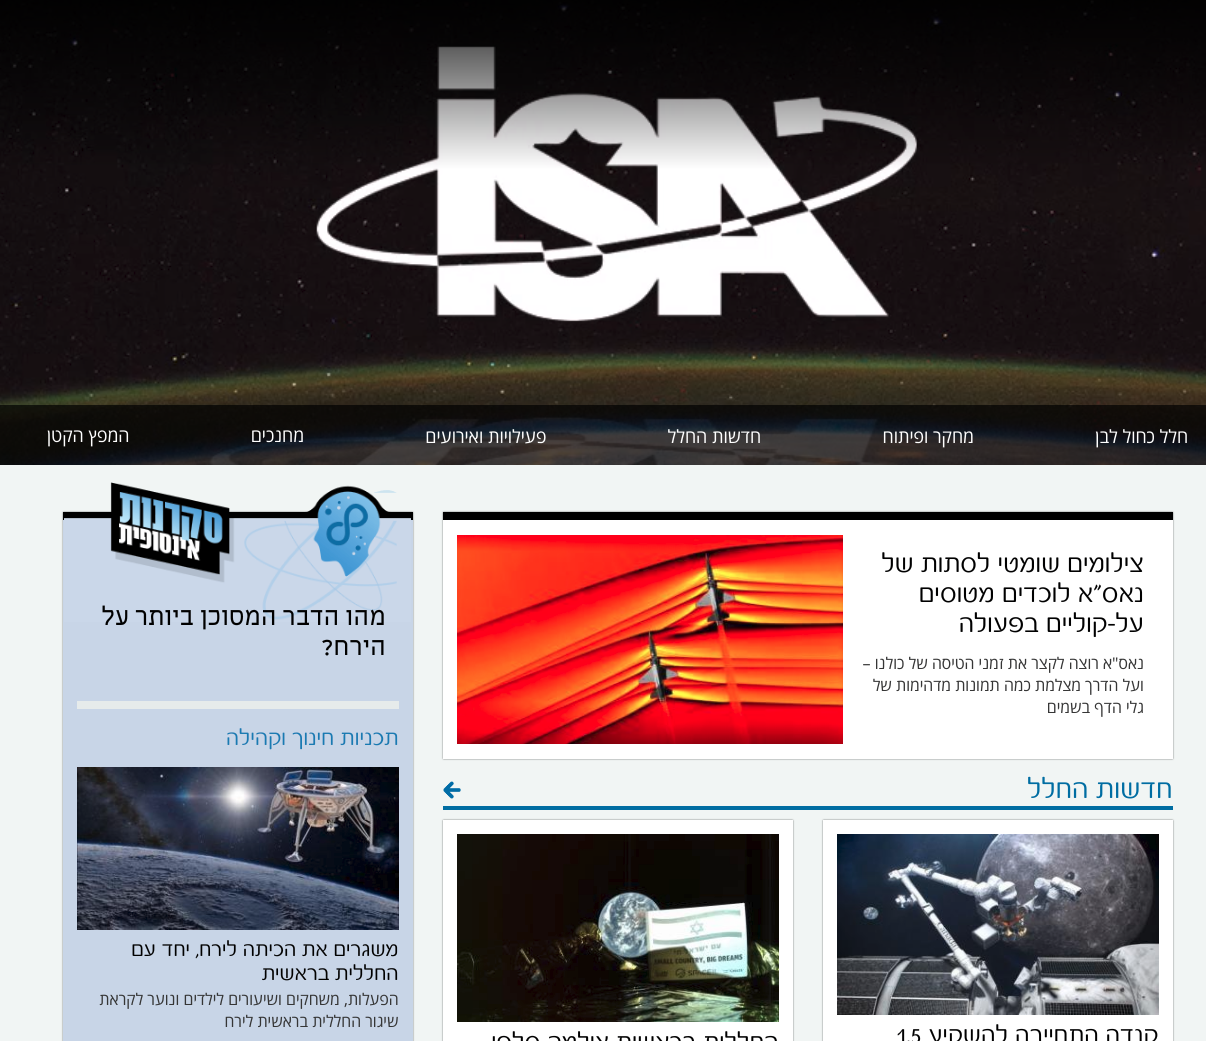 spaceil website homepage